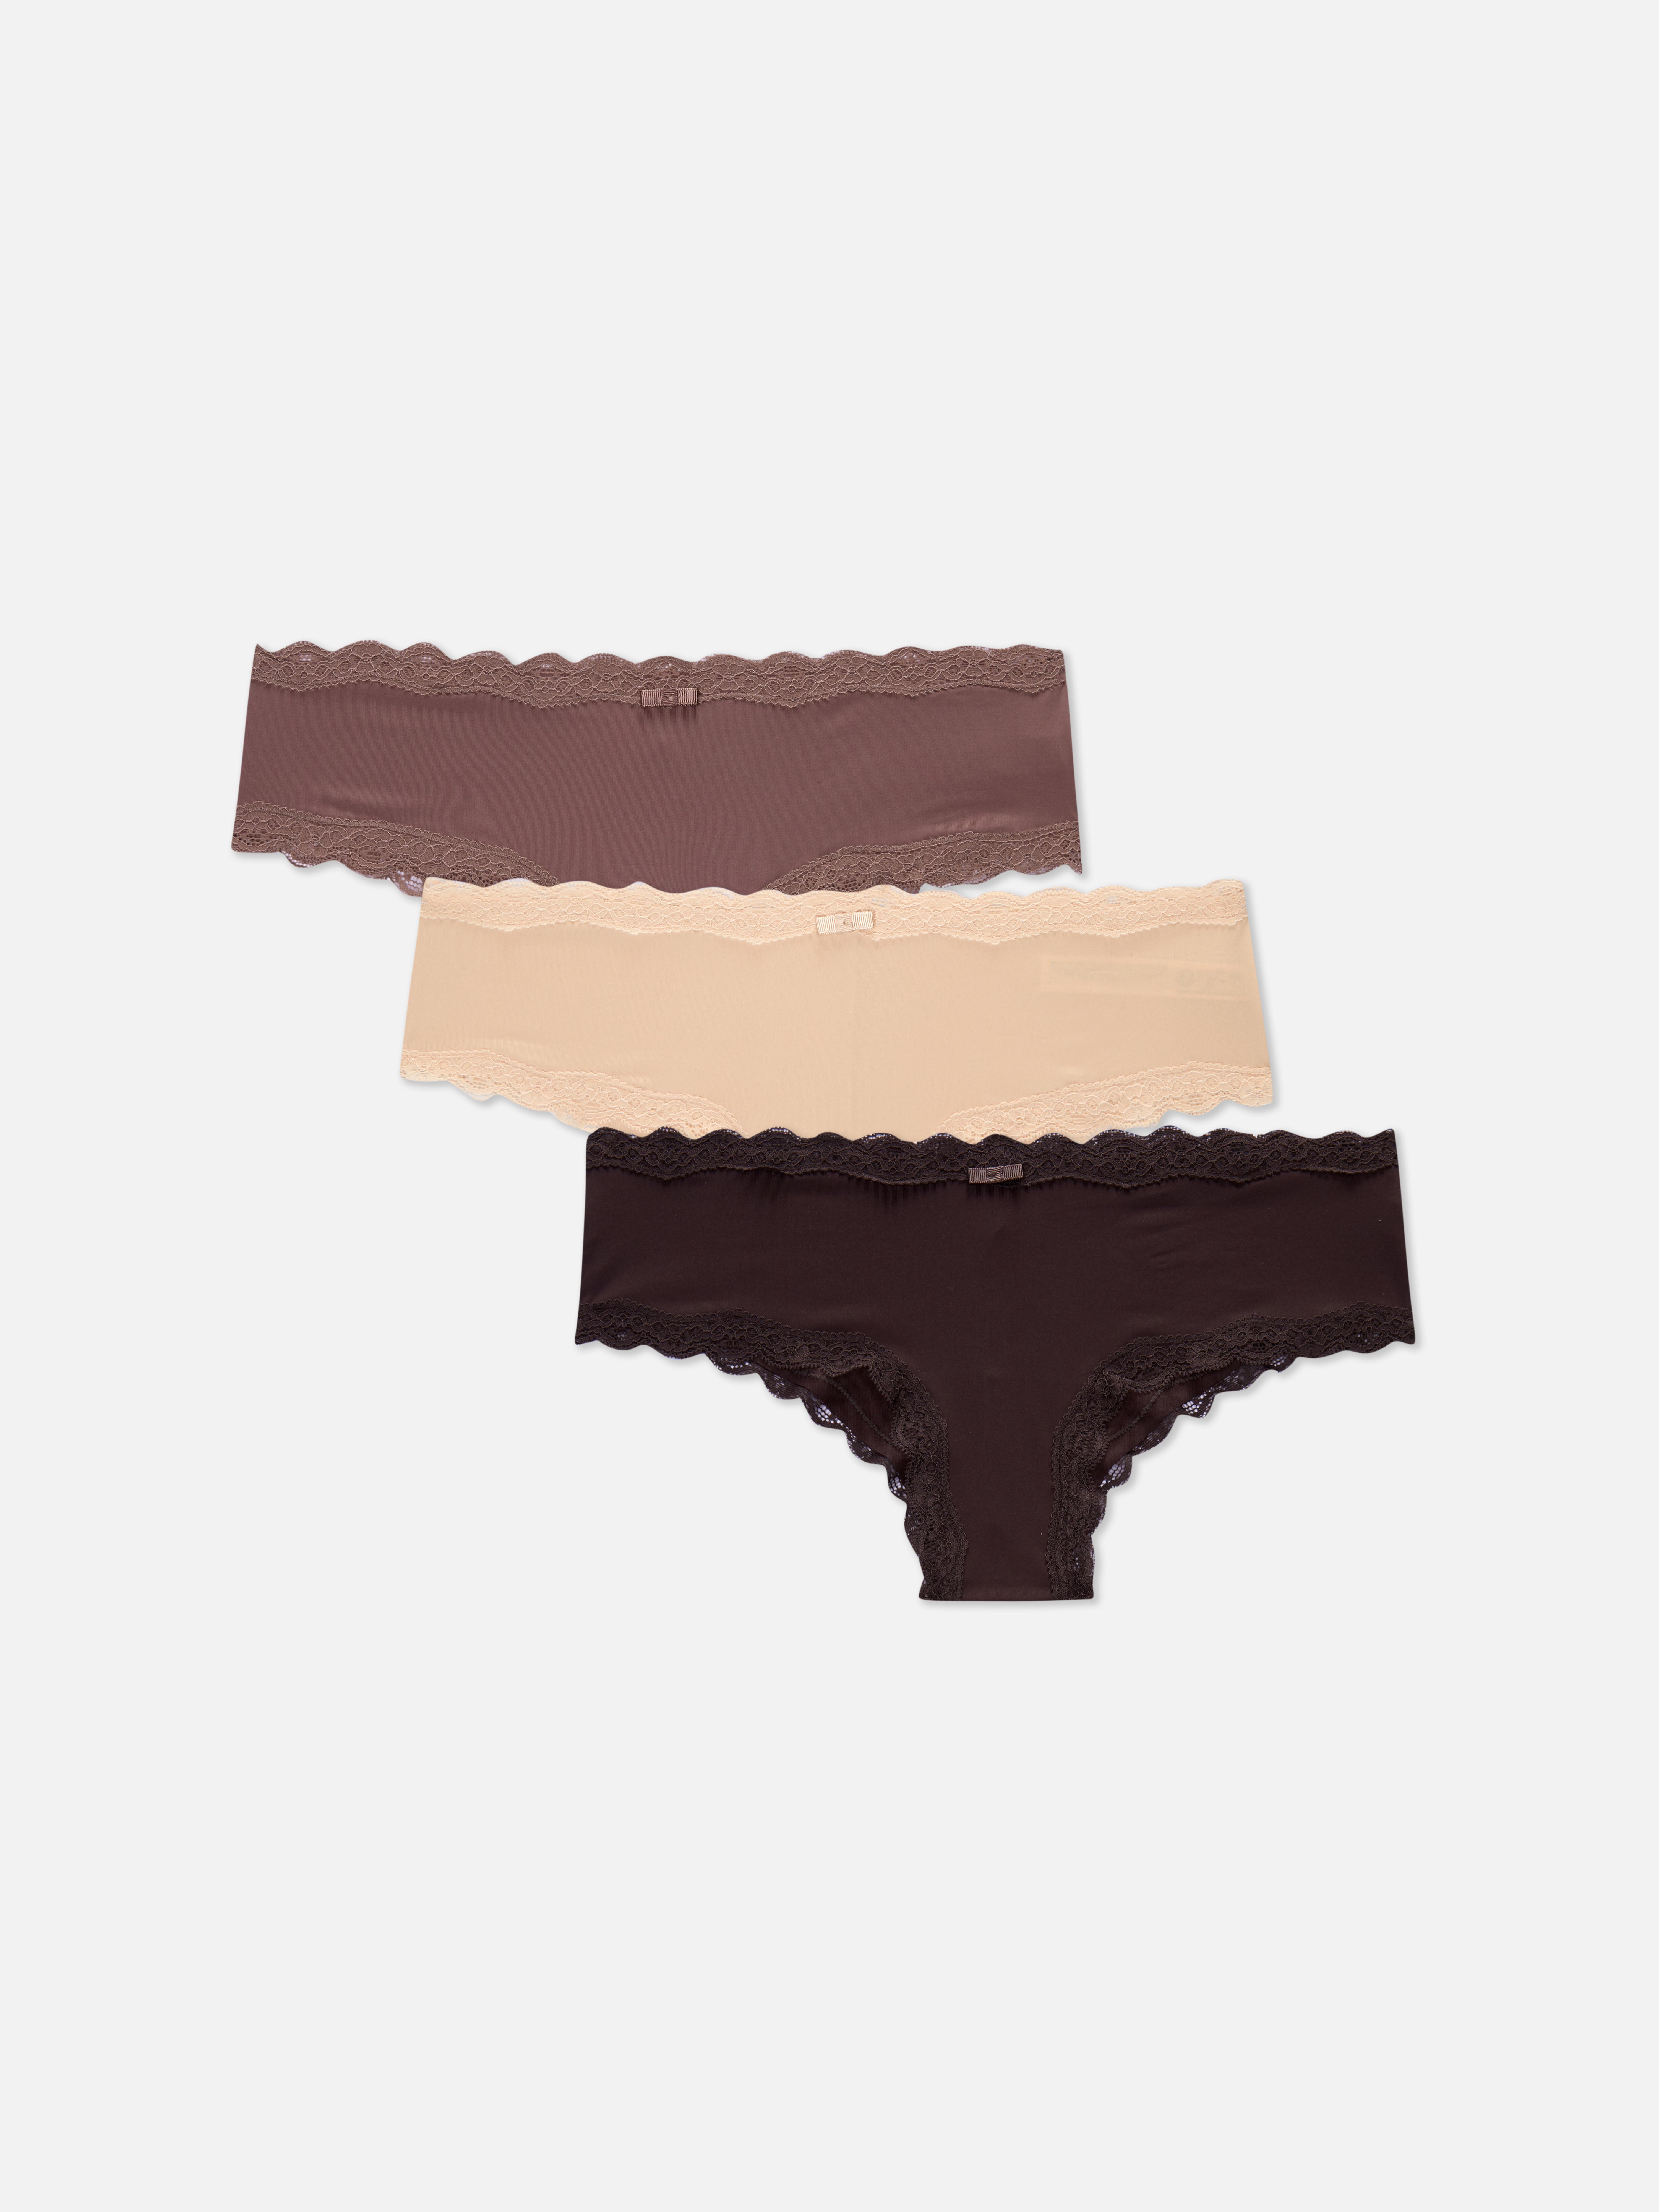 Women's Underwear in Oat